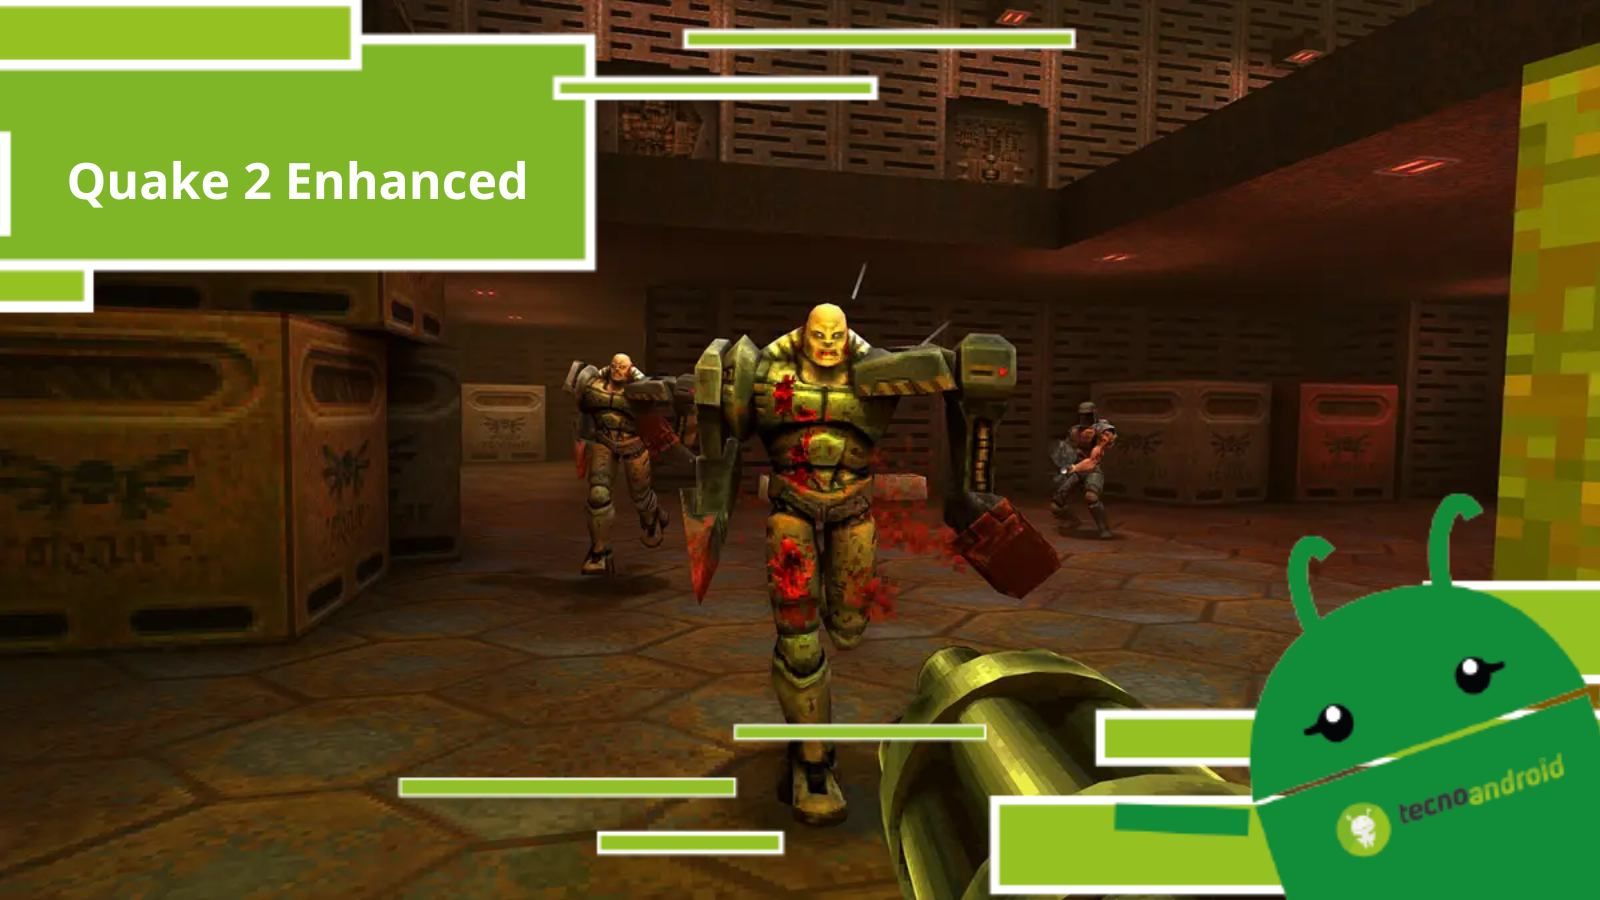 Quake 2 Enhanced, è ufficialmente uscito il nuovo sparatutto del 1997